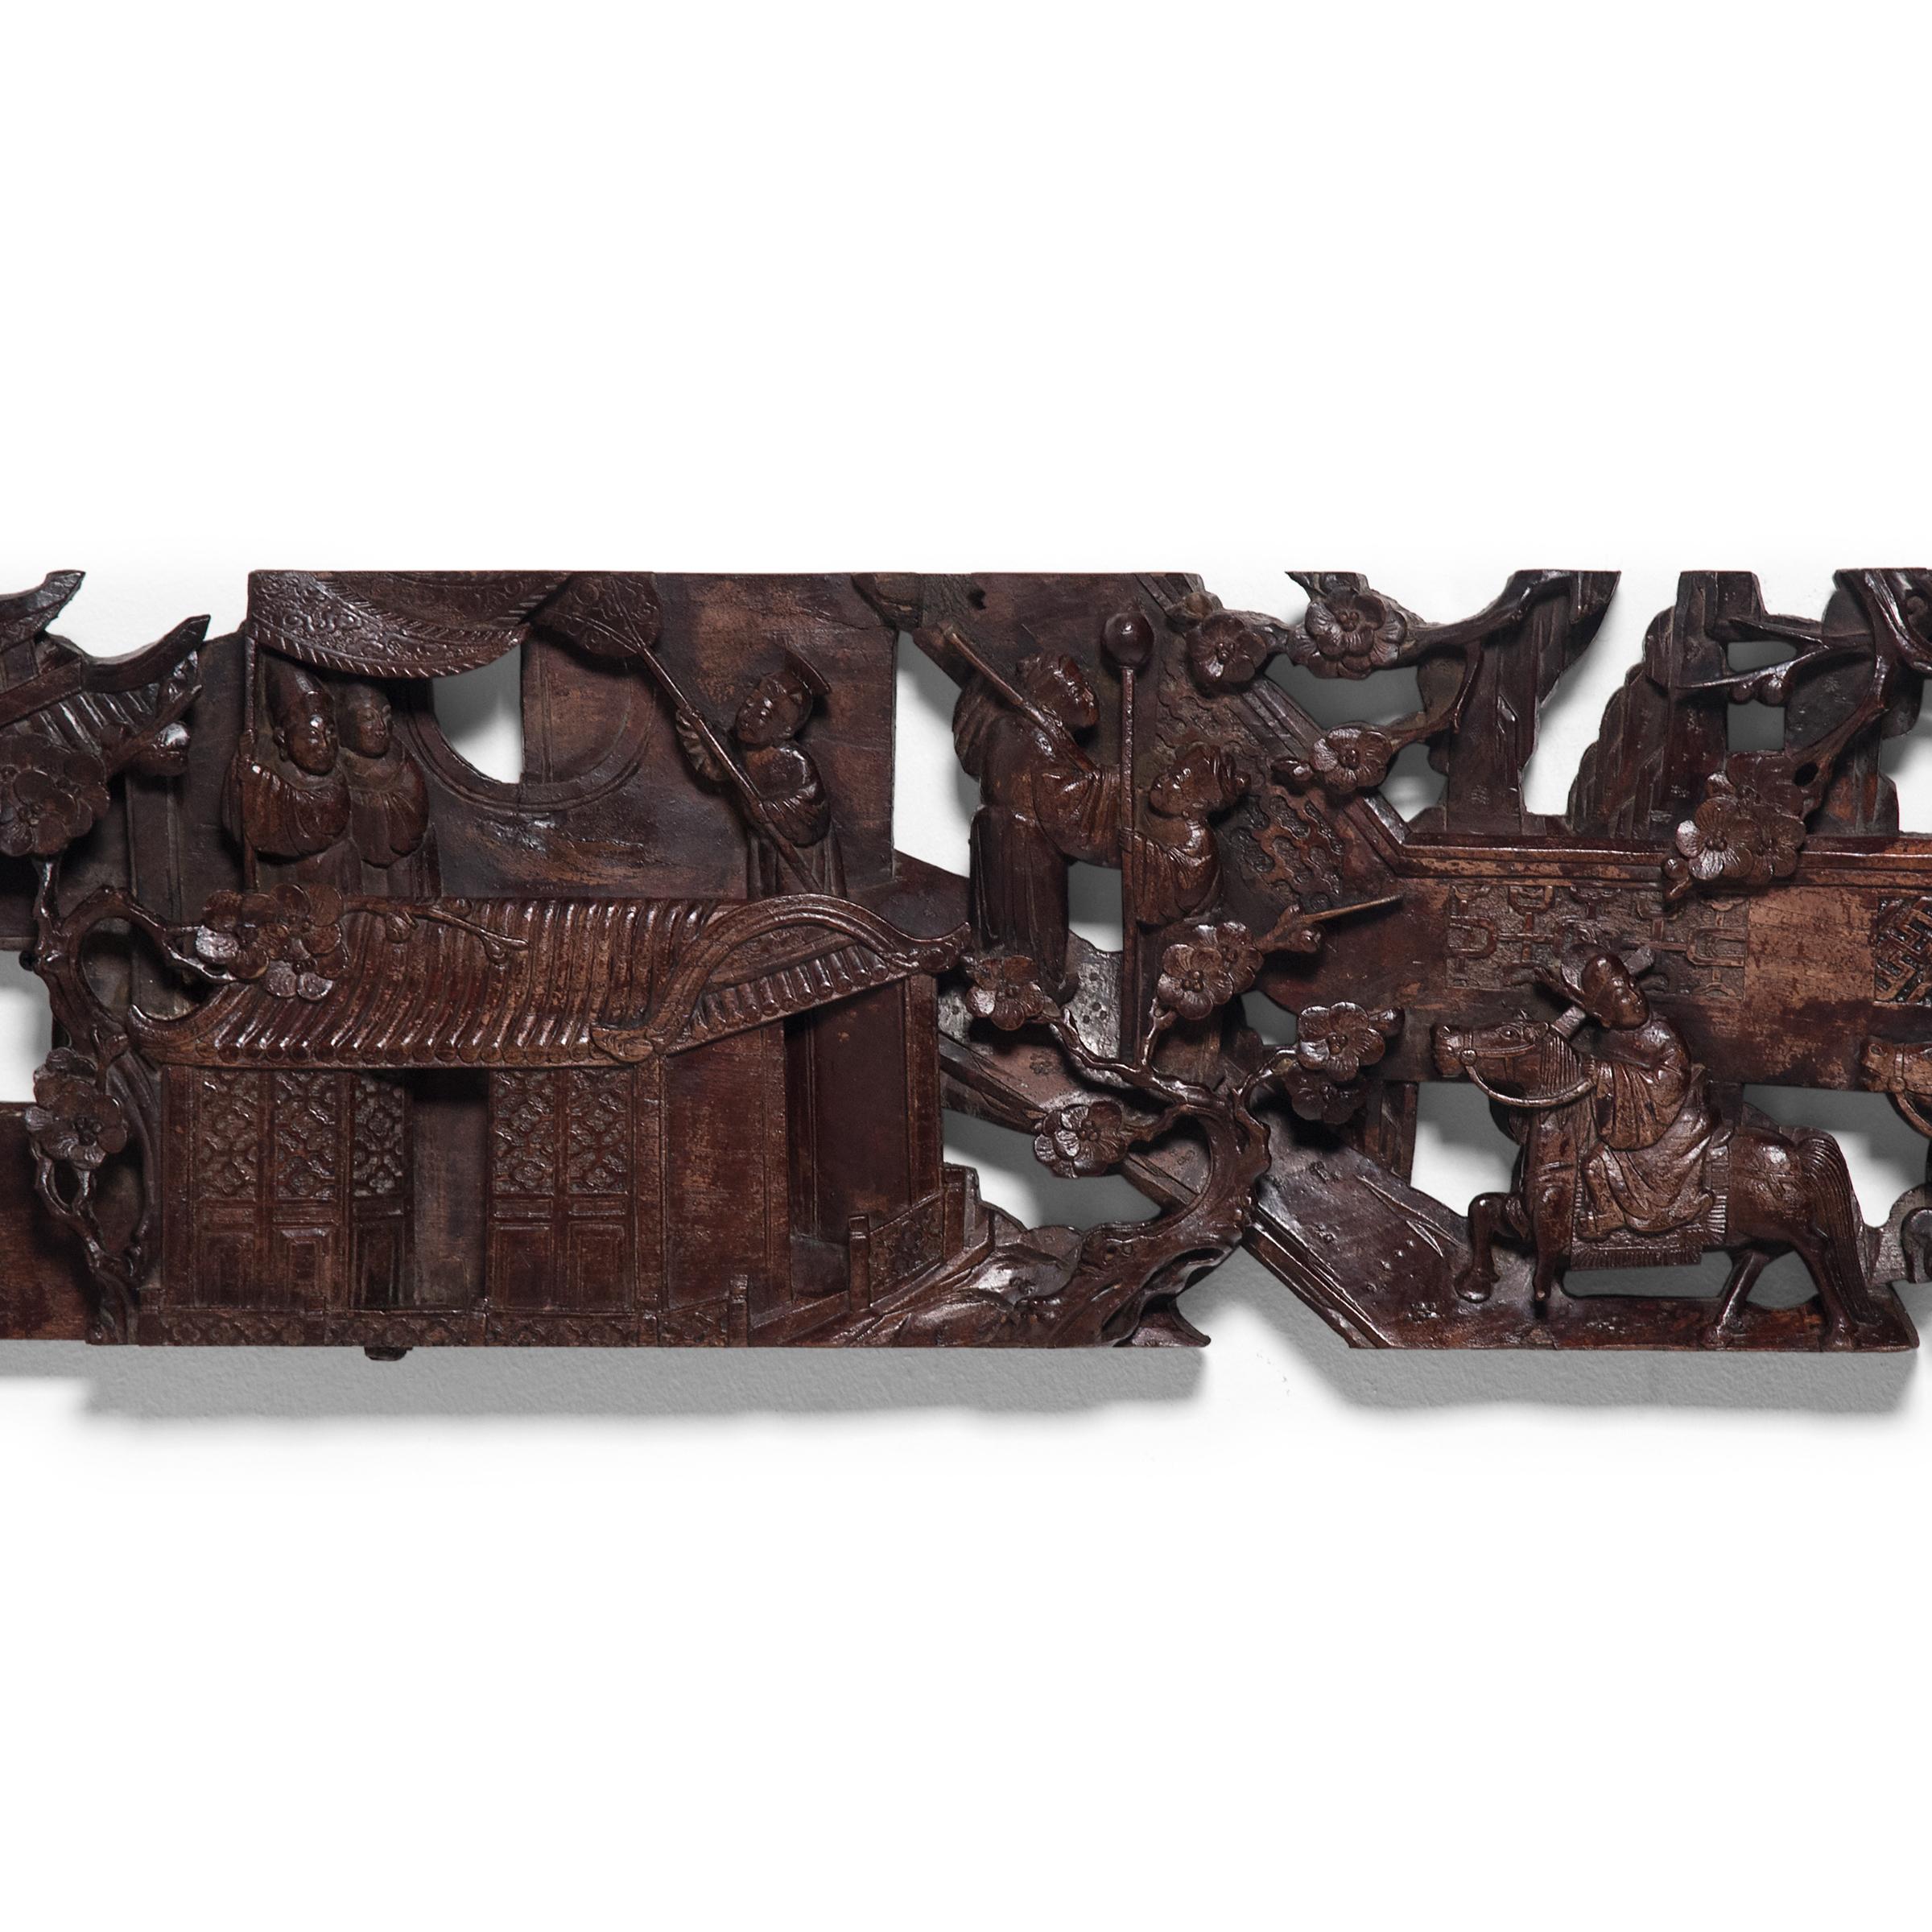 Dans l'architecture chinoise traditionnelle, les bâtiments classiques à ossature bois étaient souvent rehaussés par des finitions élaborées et des ornements finement sculptés - comme cette cantonnière en bois d'orme du XIXe siècle. La cantonnière